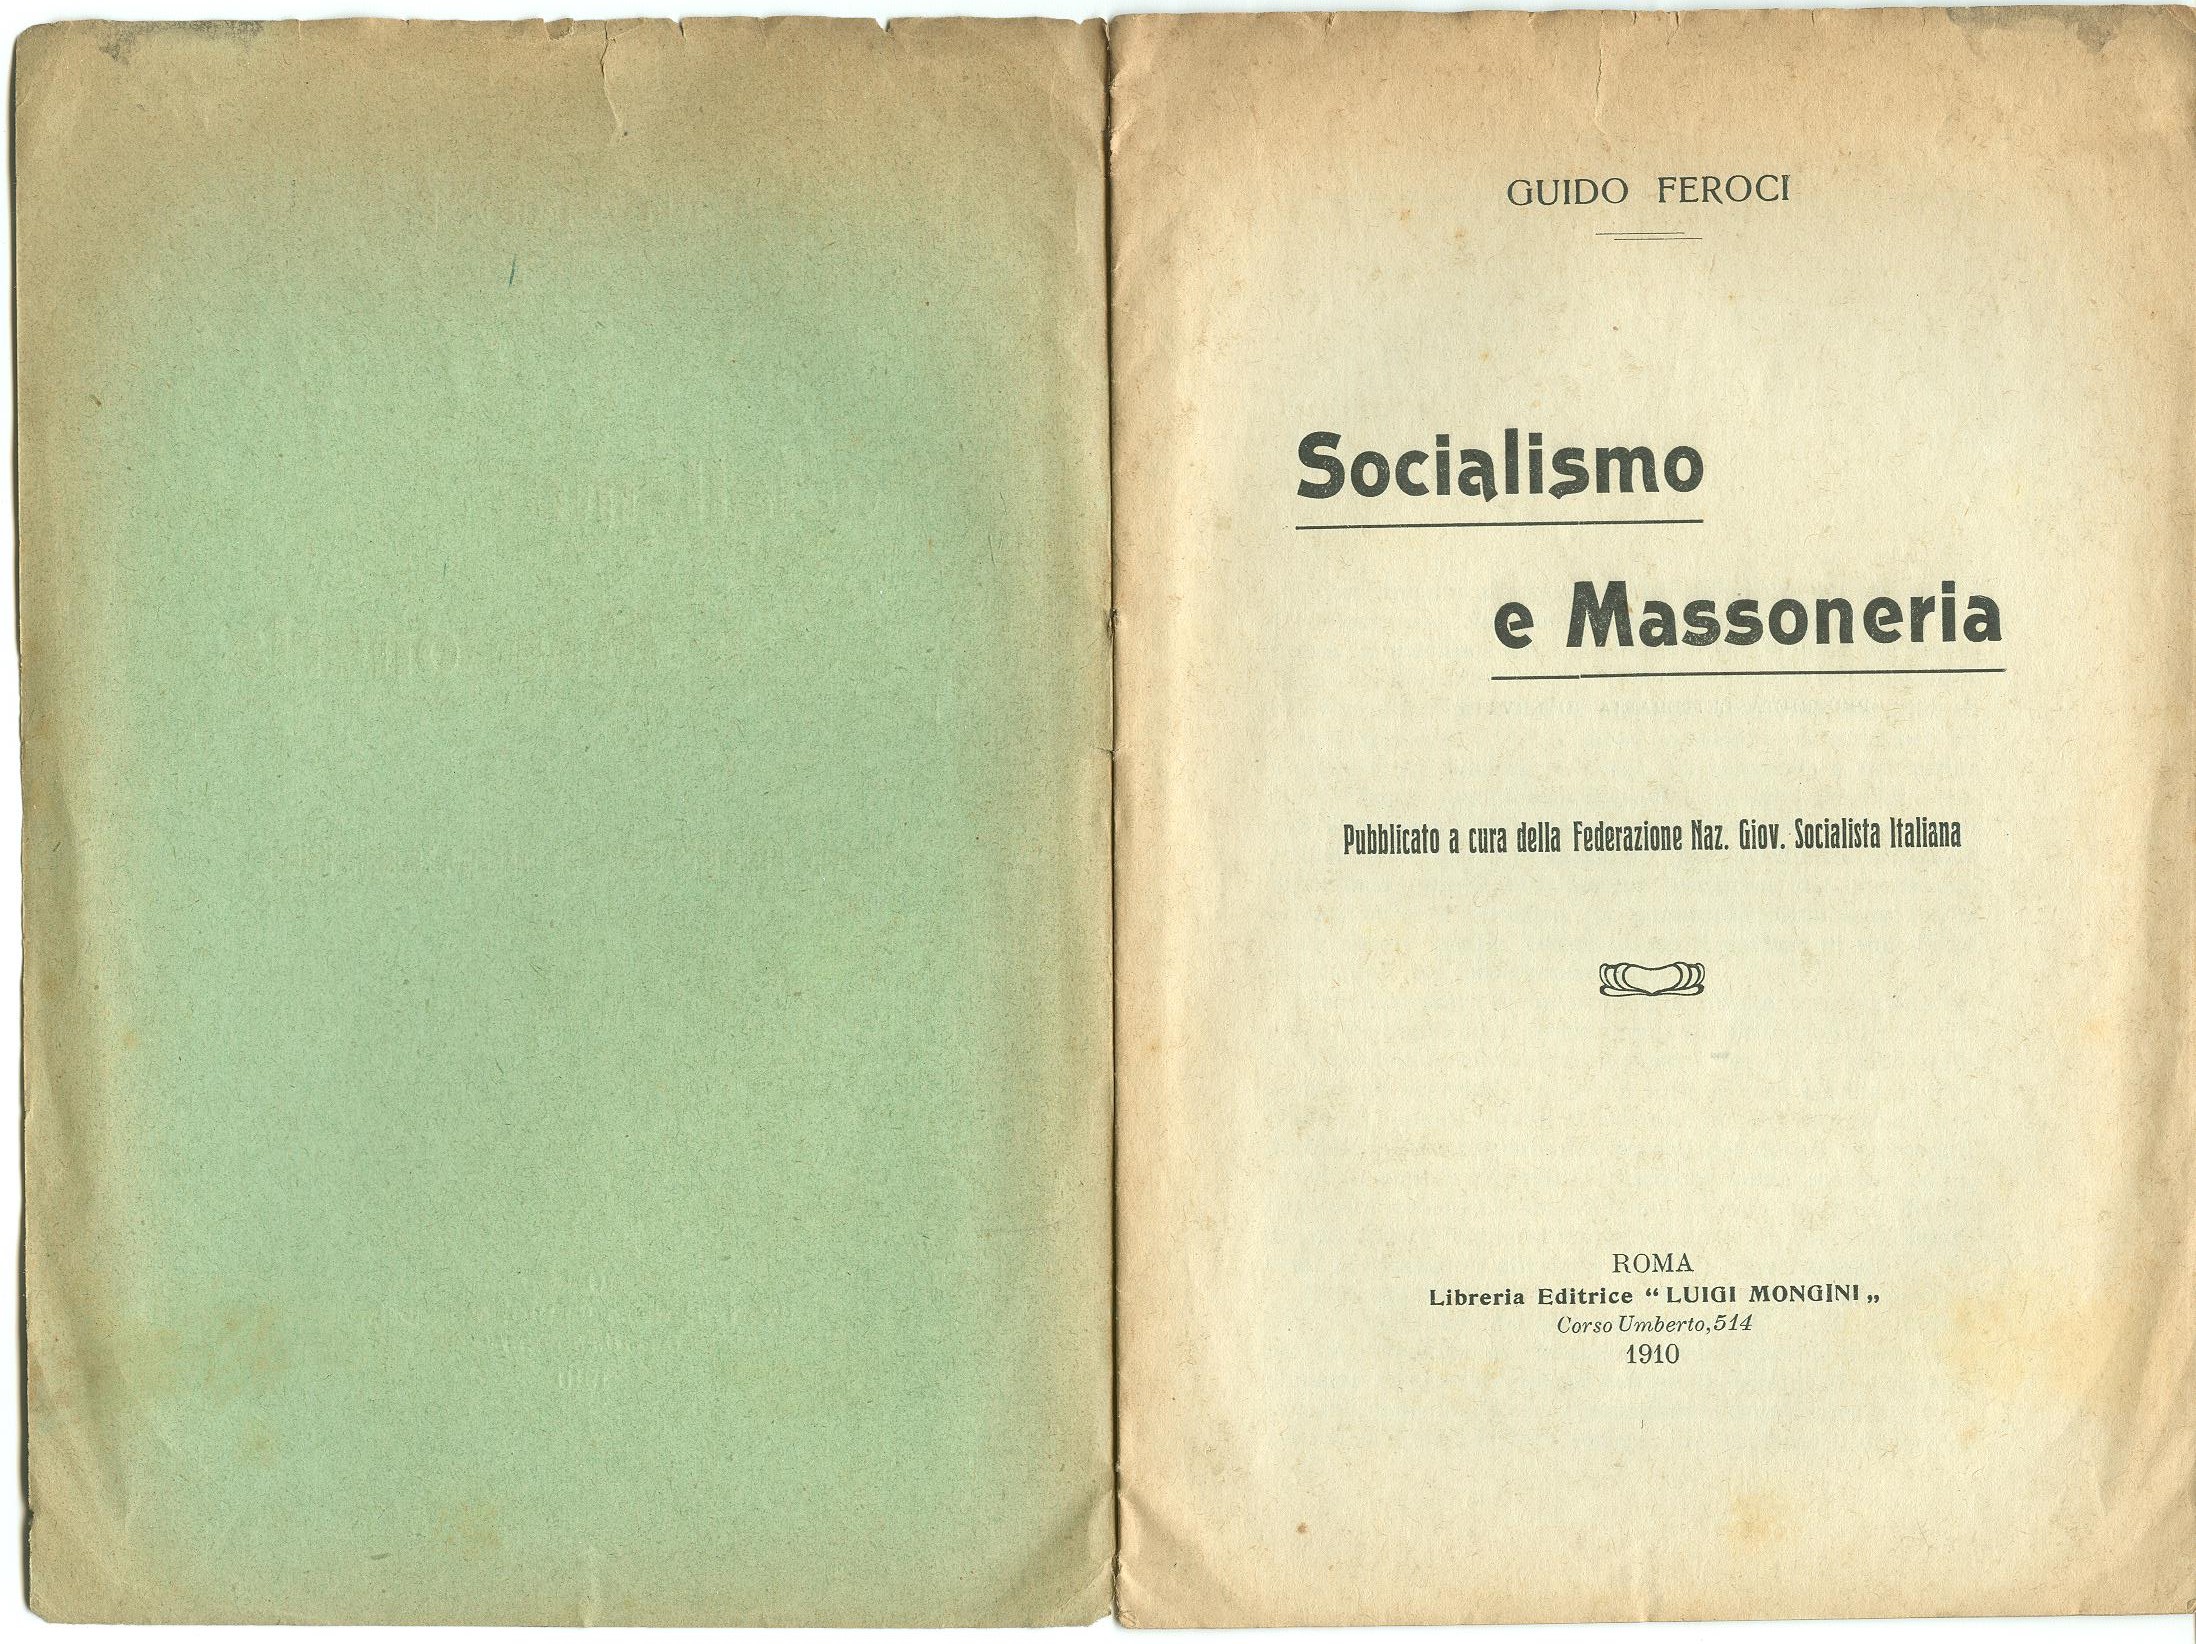 Guido Feroci, Socialismo e Massoneria (1910) - pag. 2